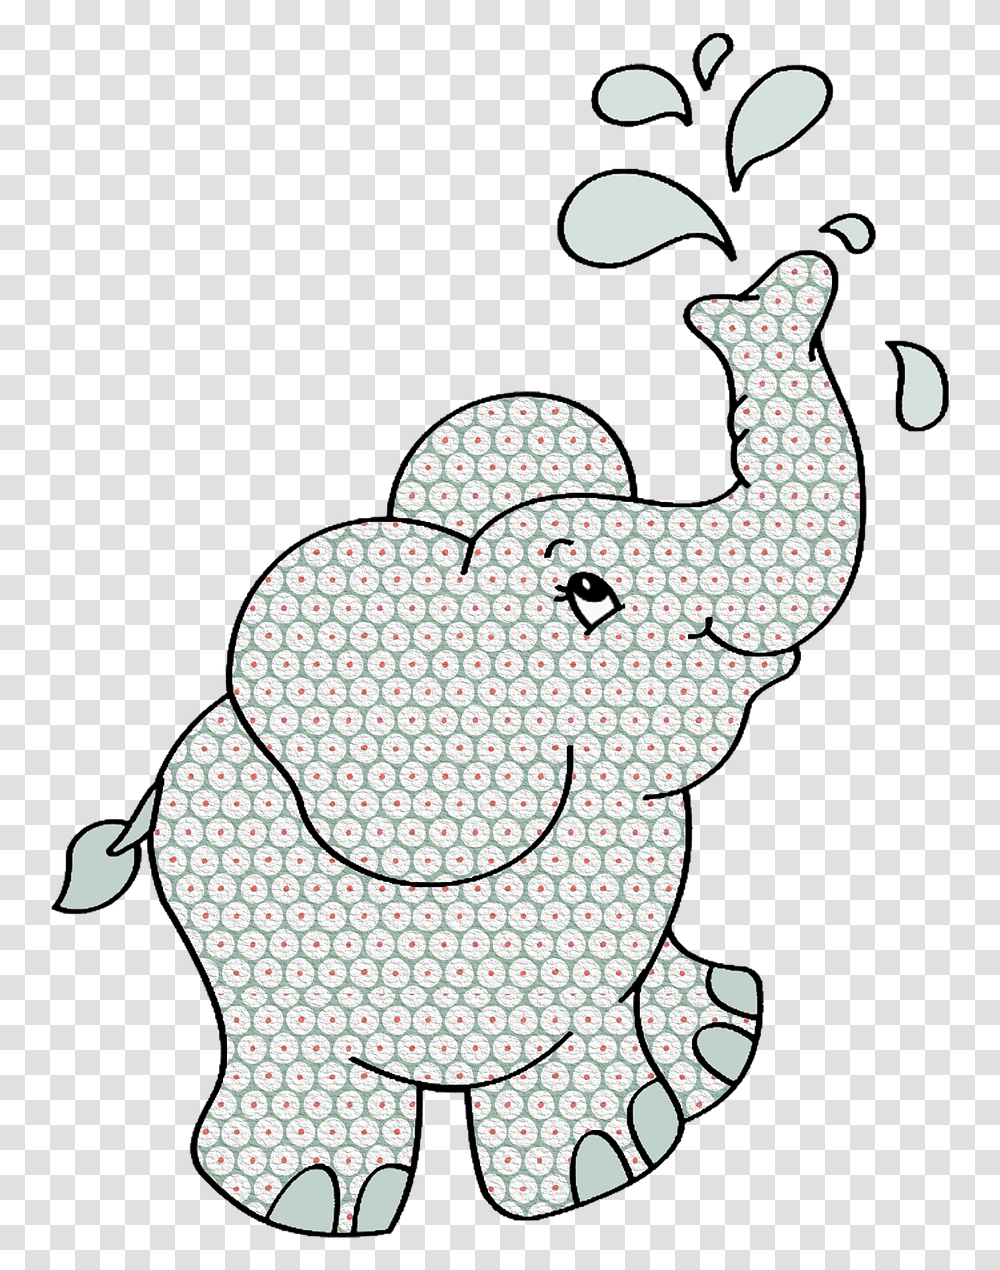 Elephant Texture Colored Imagini Cu Elefanti Pentru Colorat, Label, Drawing, Leisure Activities Transparent Png